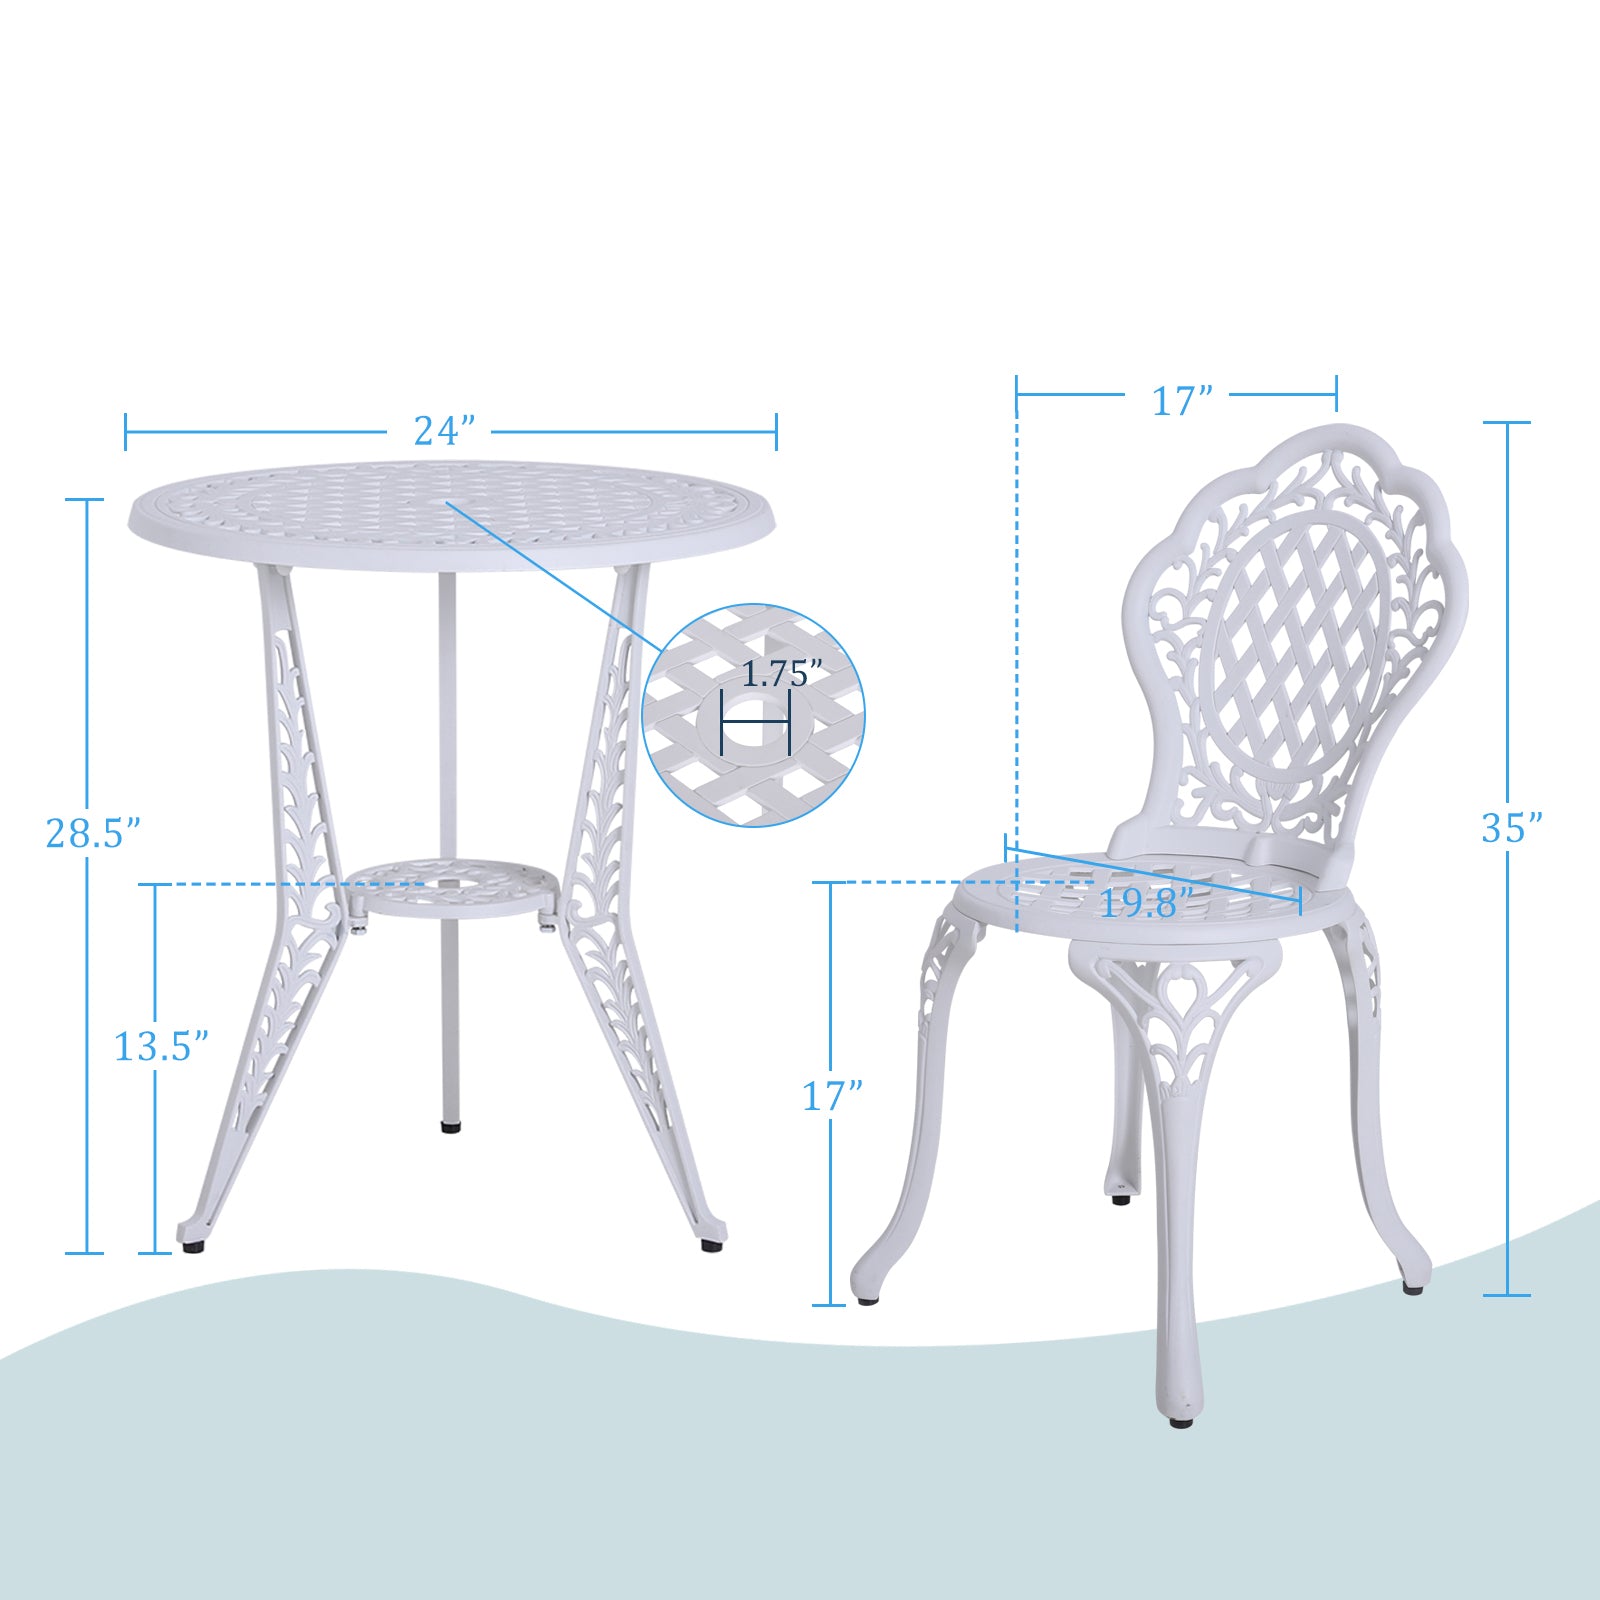 Sophia & William 3-Piece Retro Round Chairs & Round Table Aluminum Patio Bistro Set